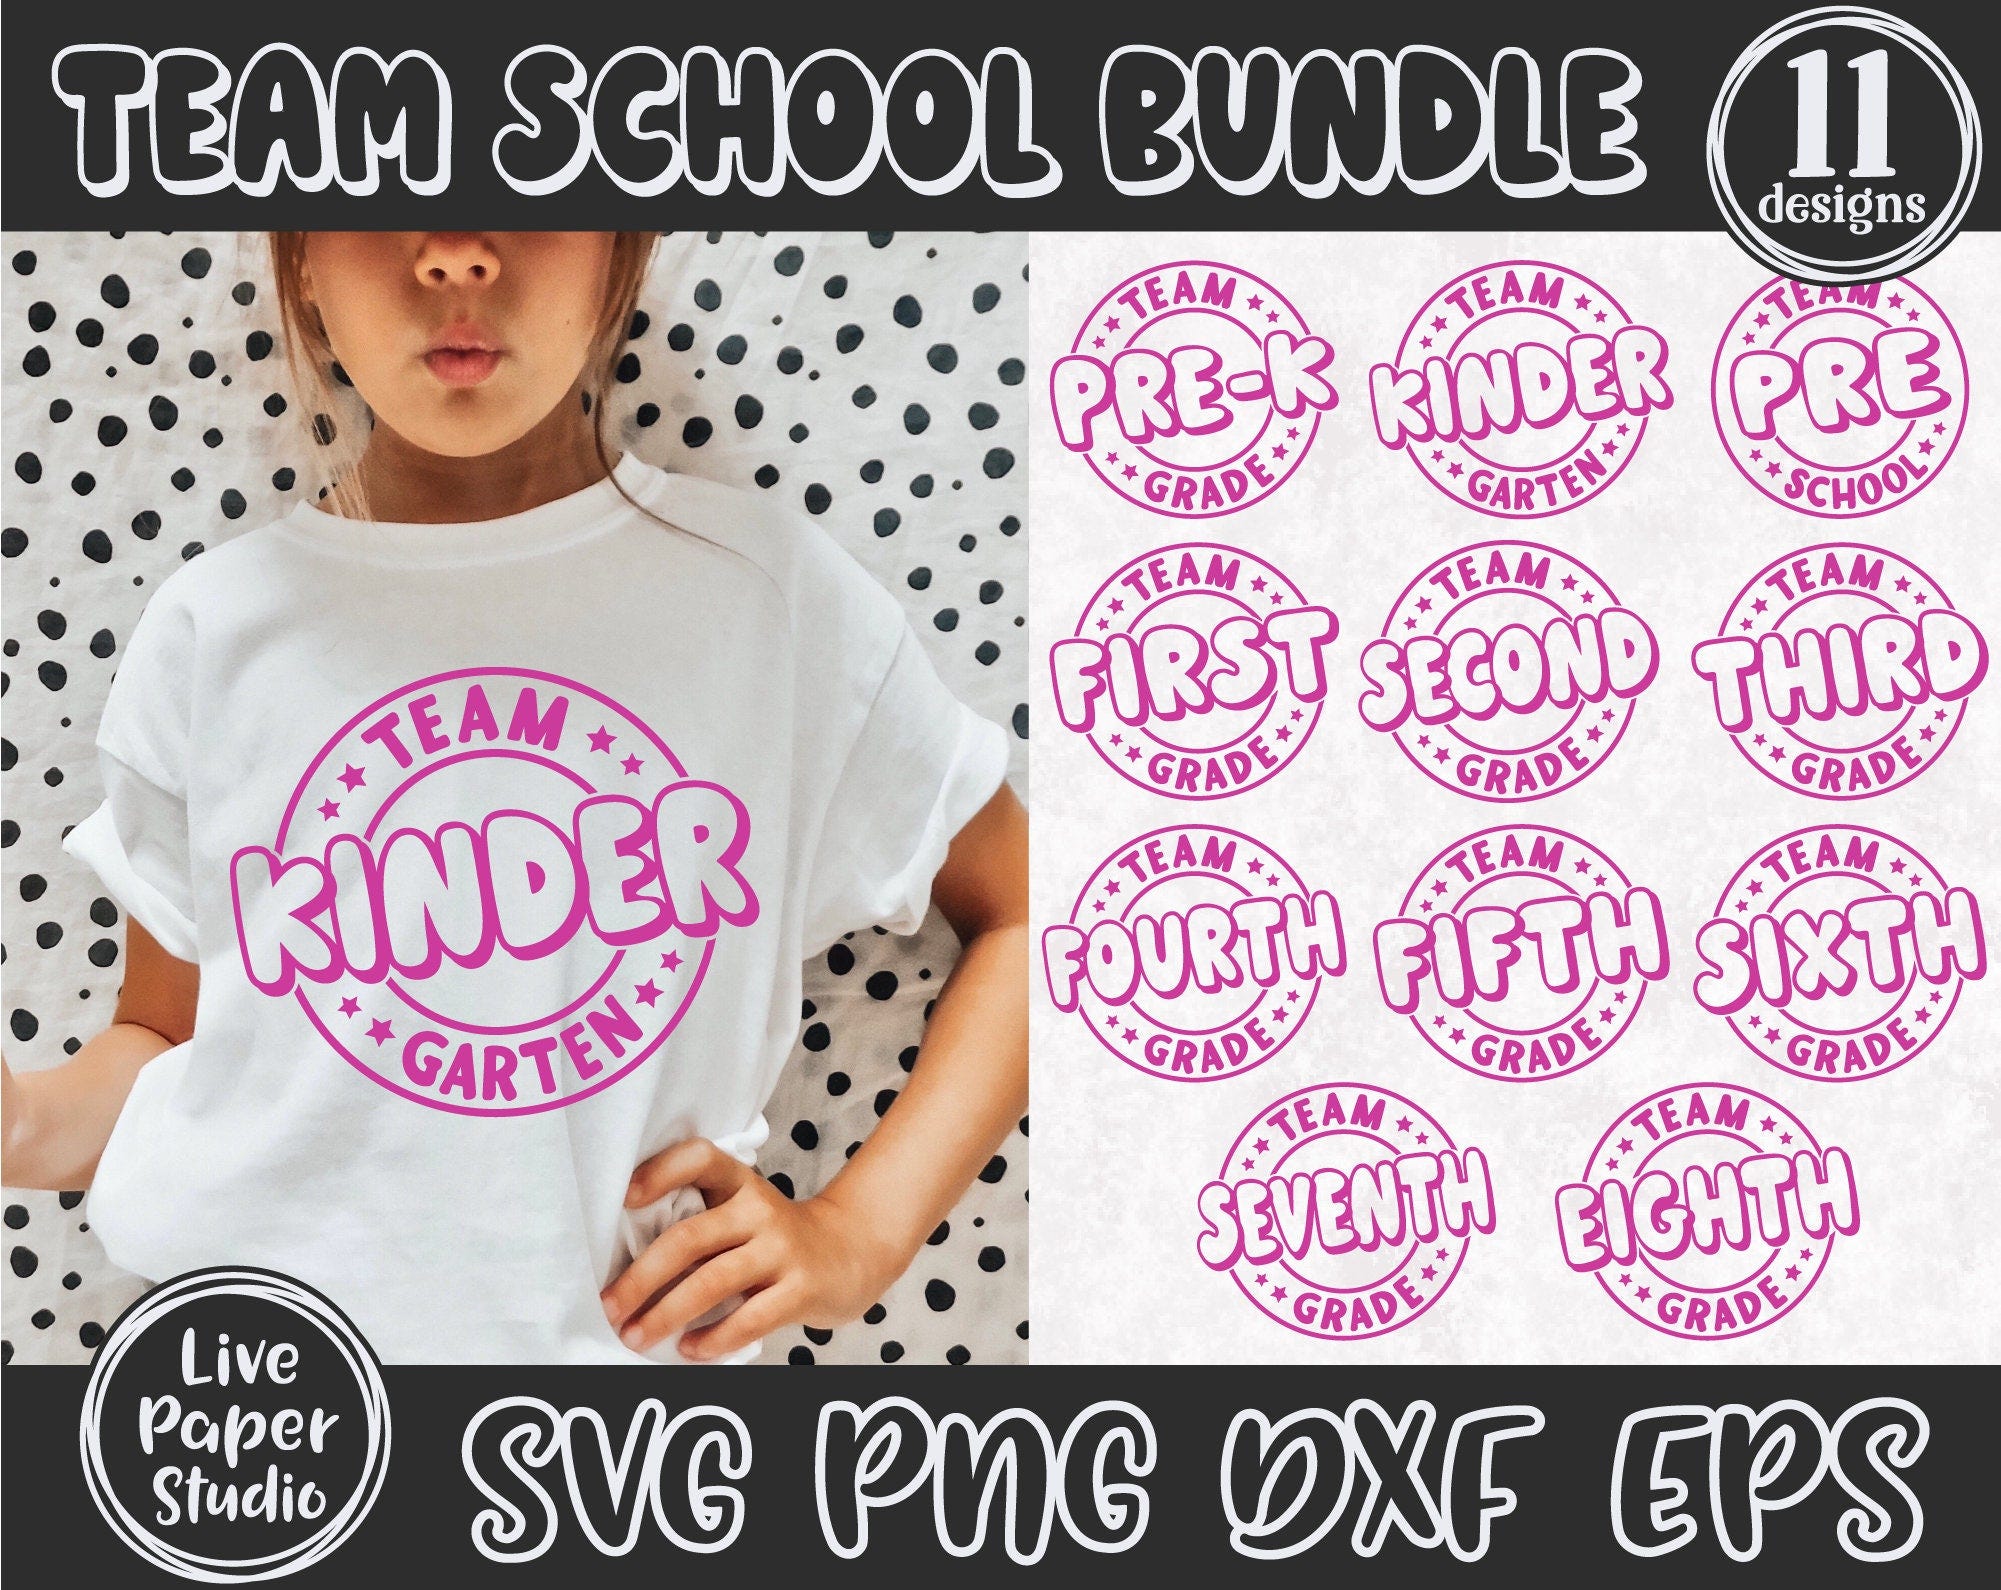 School Grades Bundle Svg Png, Team 1st 2nd 3rd 4th 5th 6th 7th 8th Grade Svg, Team Kindergarten Svg, Teacher, Digital Download Png, Dxf File